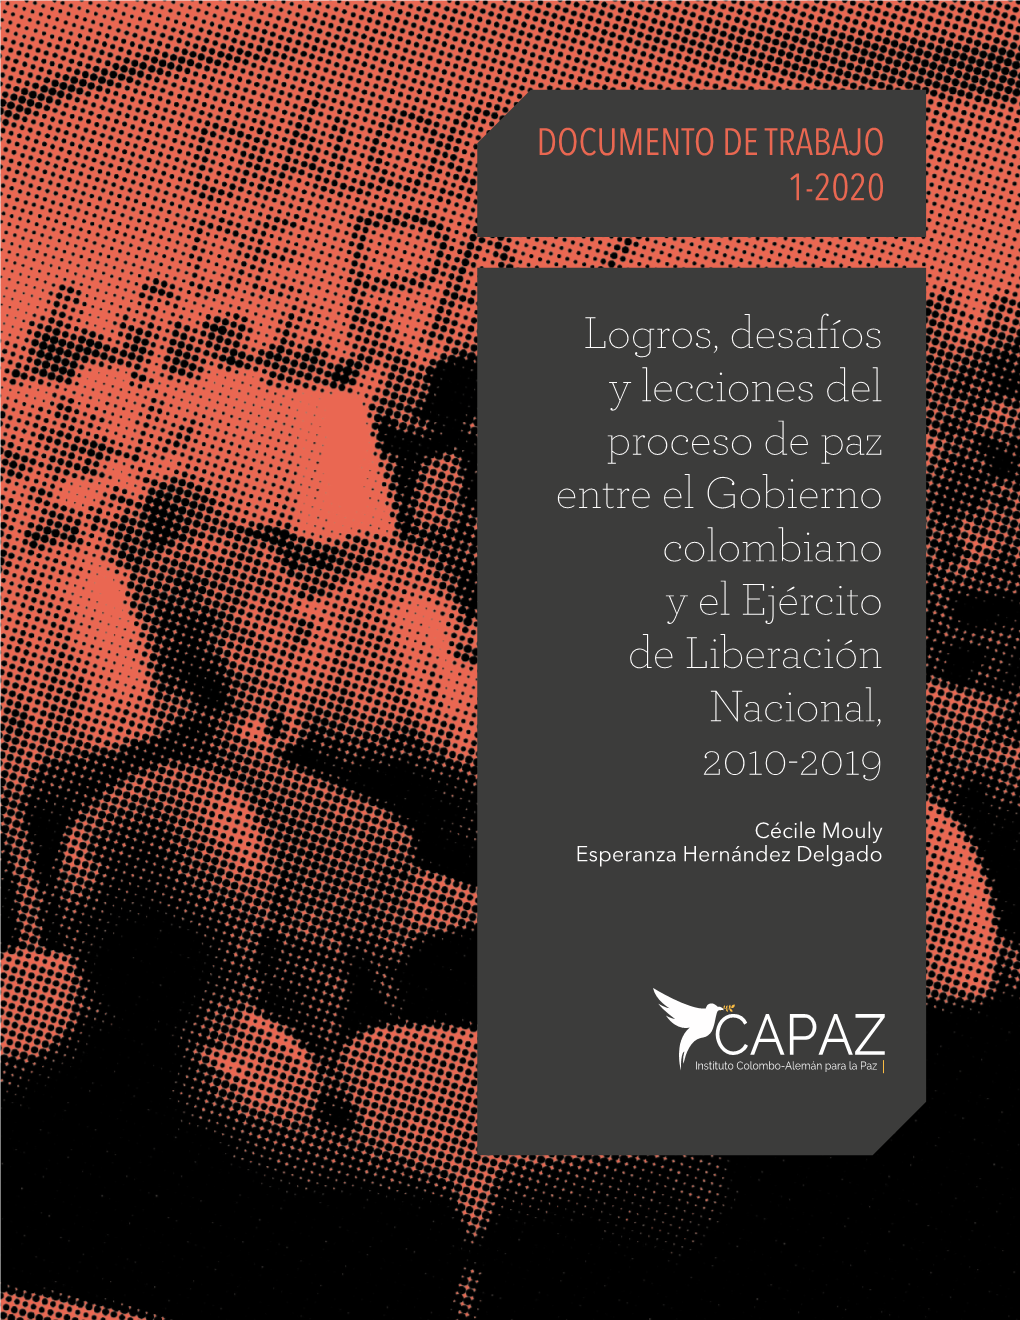 Logros, Desafíos Y Lecciones Del Proceso De Paz Entre El Gobierno Colombiano Y El Ejército De Liberación Nacional, 2010-2019